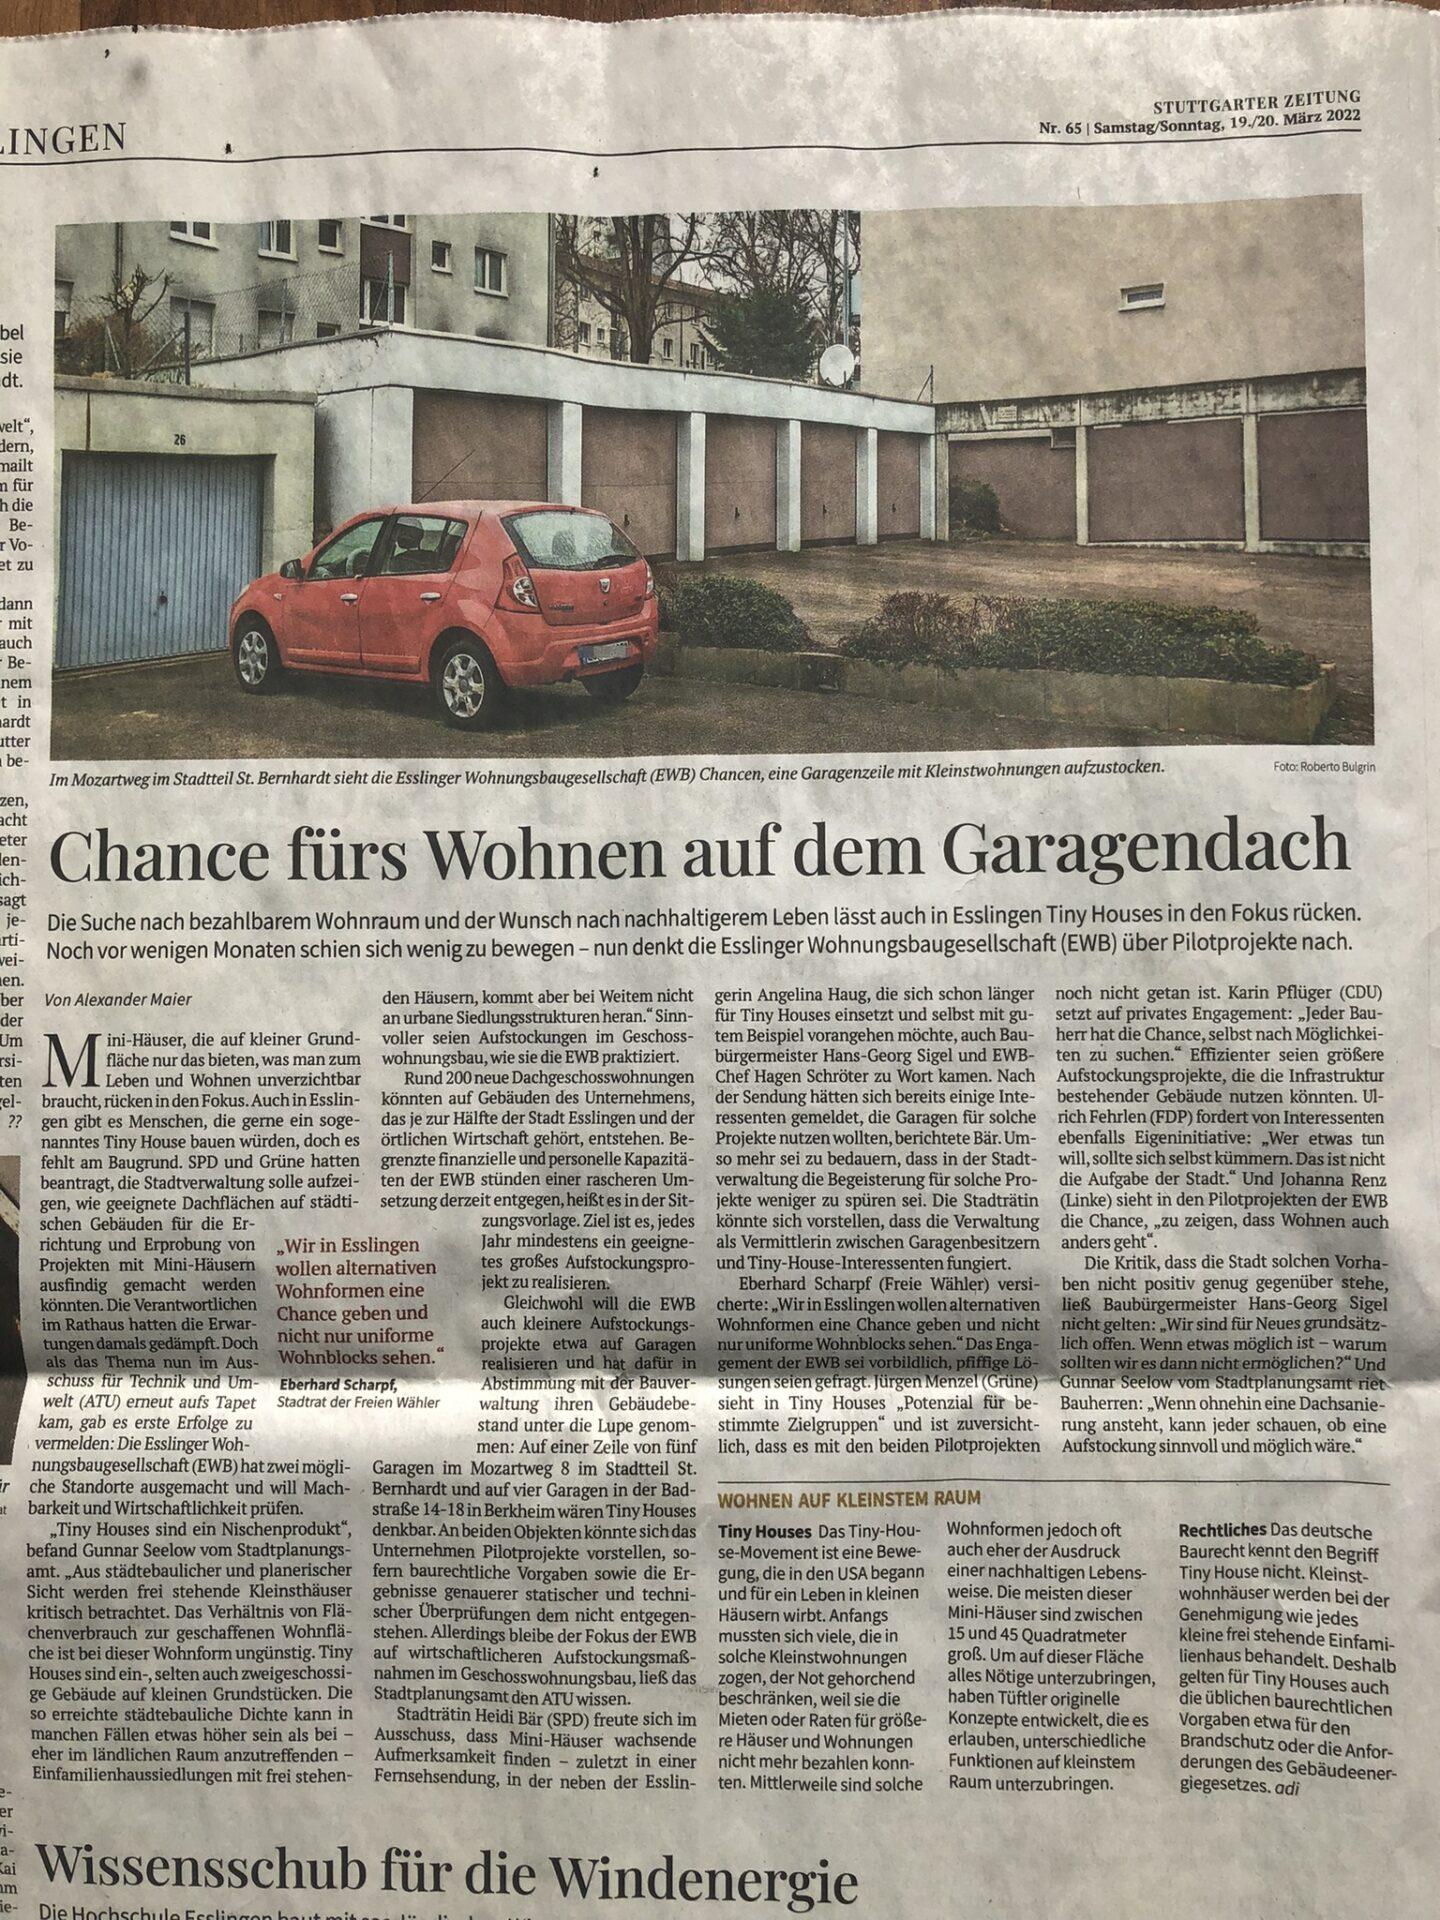 Stuttgarter Zeitung 19.03.2022 - Chance fürs Wohnen auf dem Garagendach (Tiny Houses)